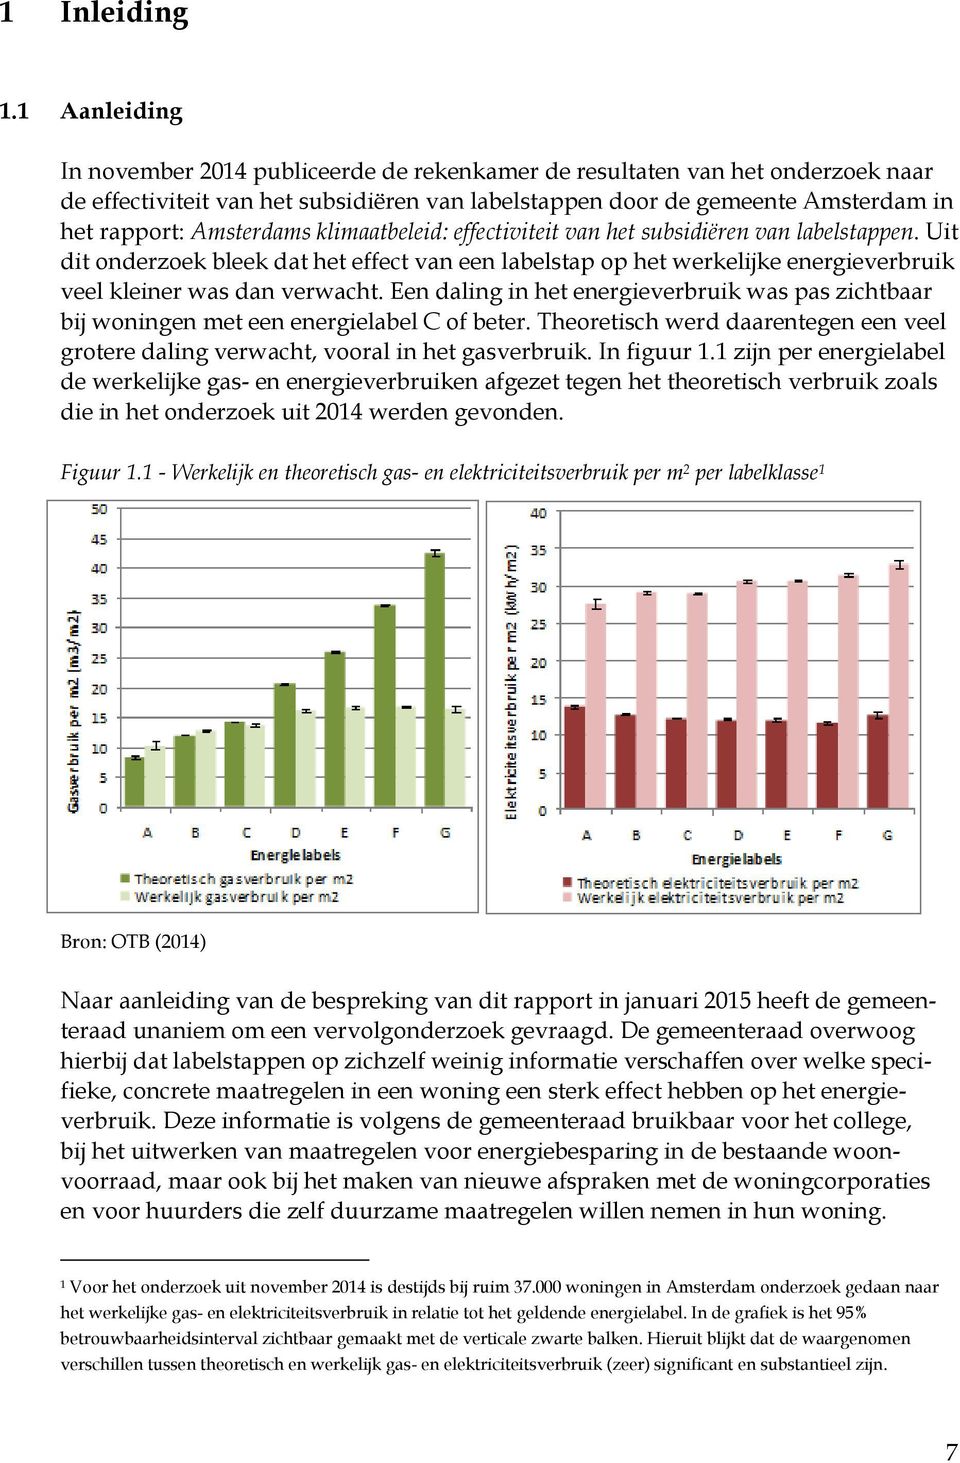 Amsterdams klimaatbeleid: effectiviteit van het subsidiëren van labelstappen. Uit dit onderzoek bleek dat het effect van een labelstap op het werkelijke energieverbruik veel kleiner was dan verwacht.